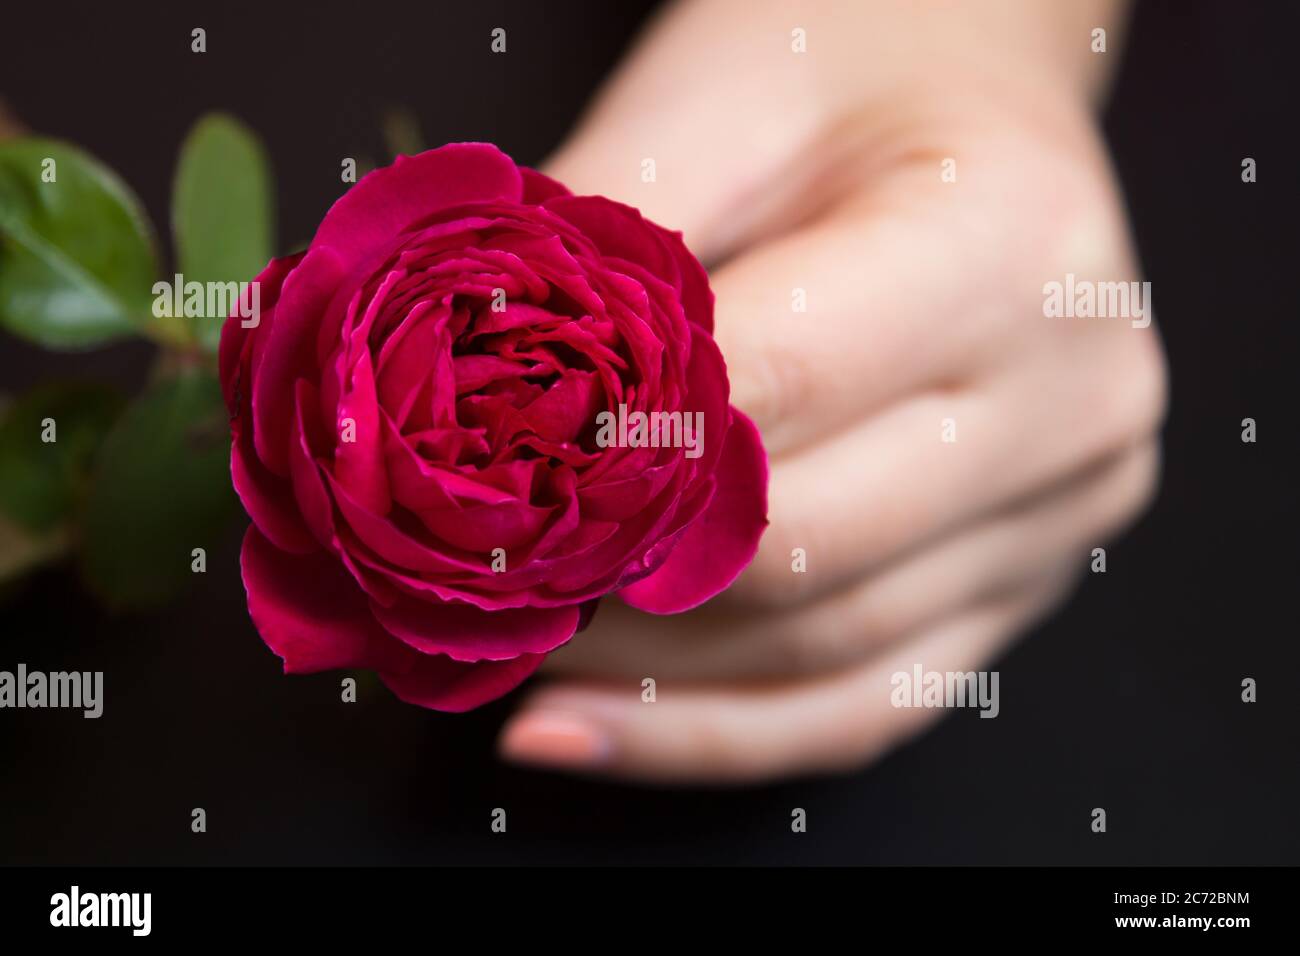 Belle rose rouge dans une main femelle sur fond noir Banque D'Images